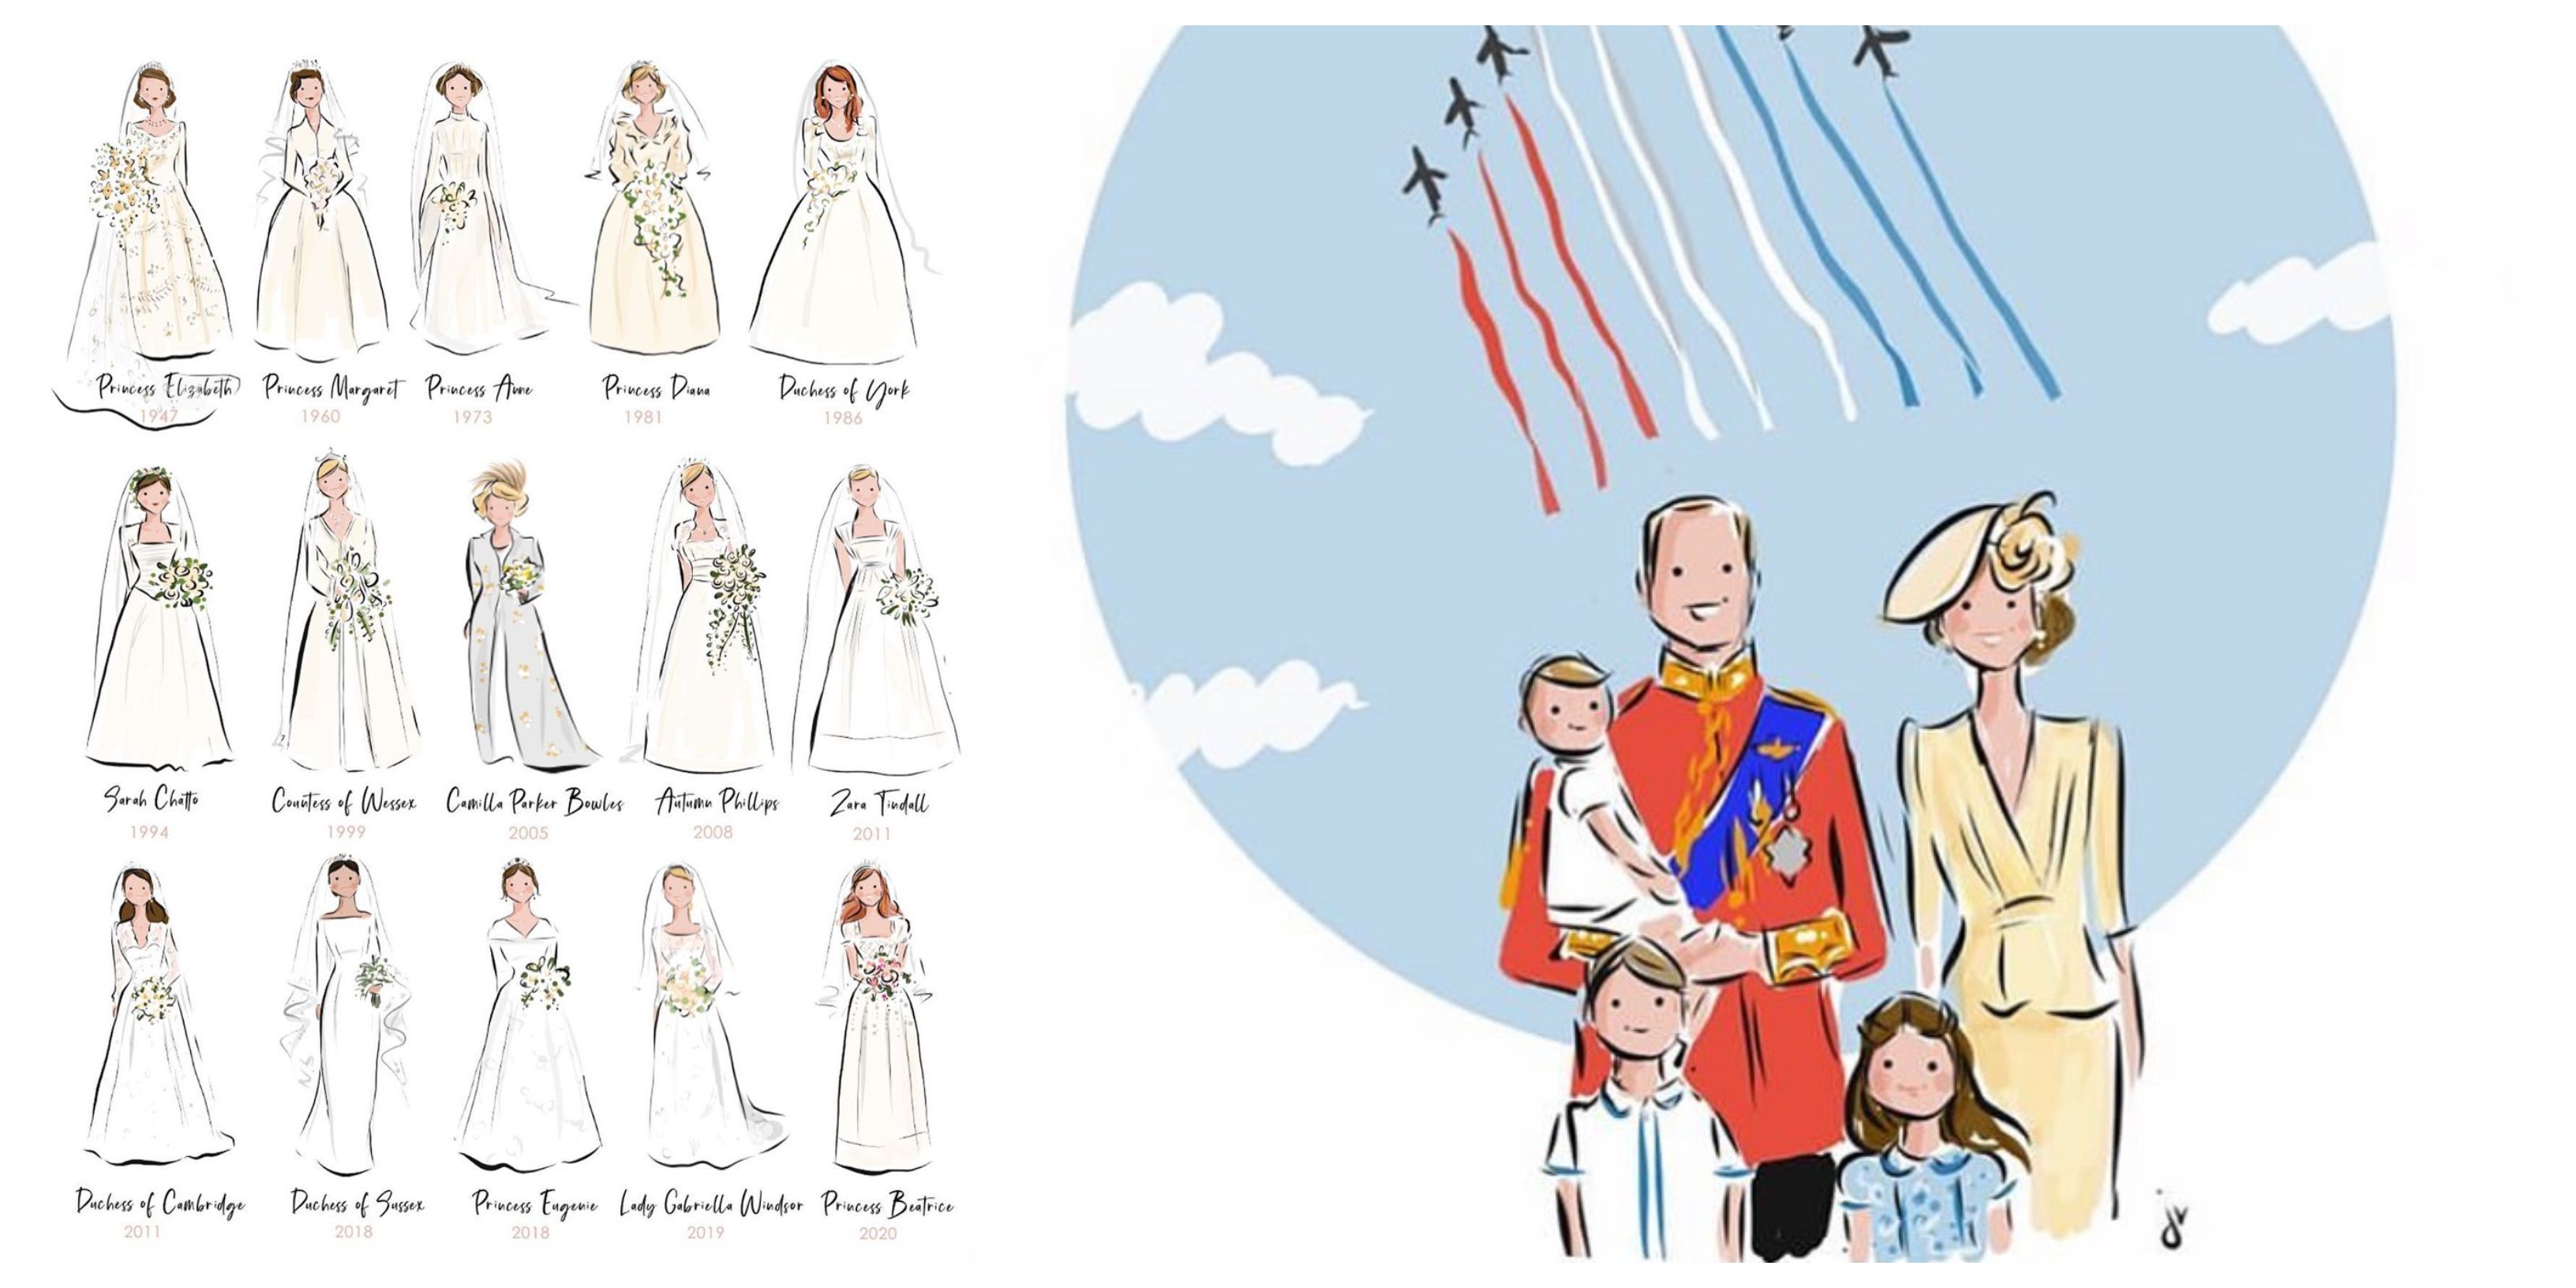 Pogledajte profil ilustratorice čiji će vas rad oduševiti: Voli crtati interakcije djece i roditelja, ali i članove kraljevske obitelji